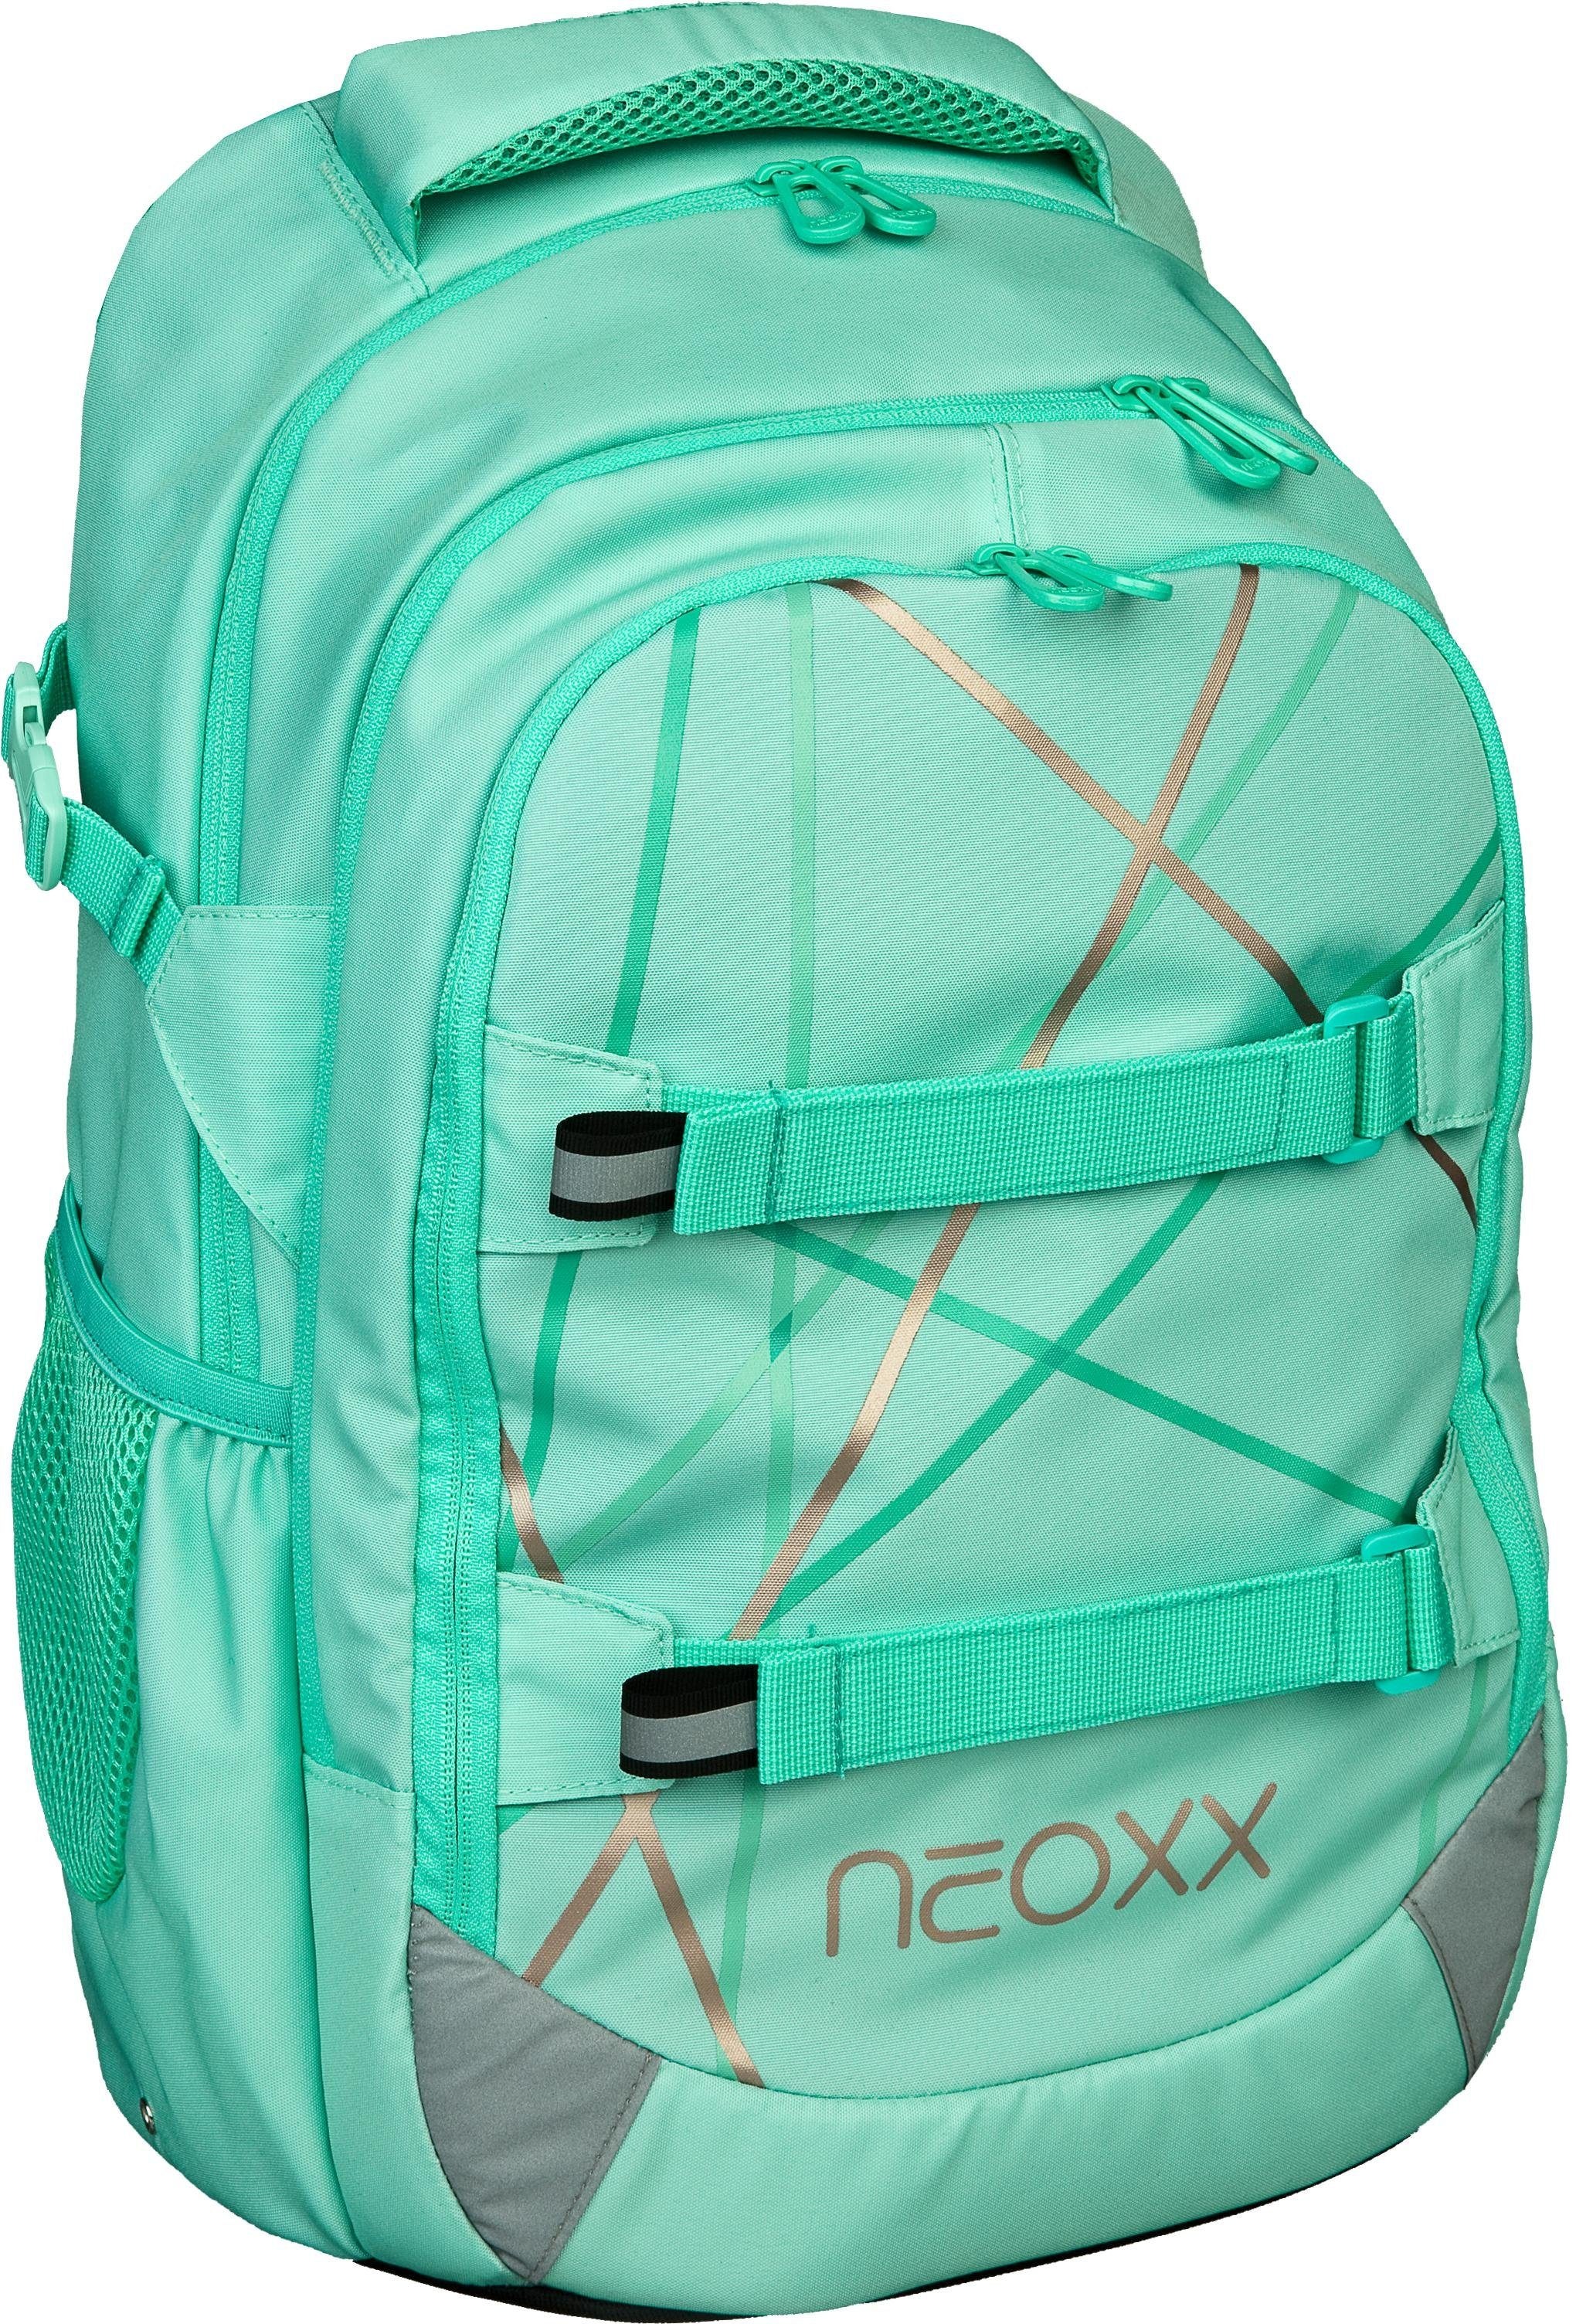 neoxx Schulrucksack »Active, Mint to be«, reflektierende Details, aus recycelten PET-Flaschen